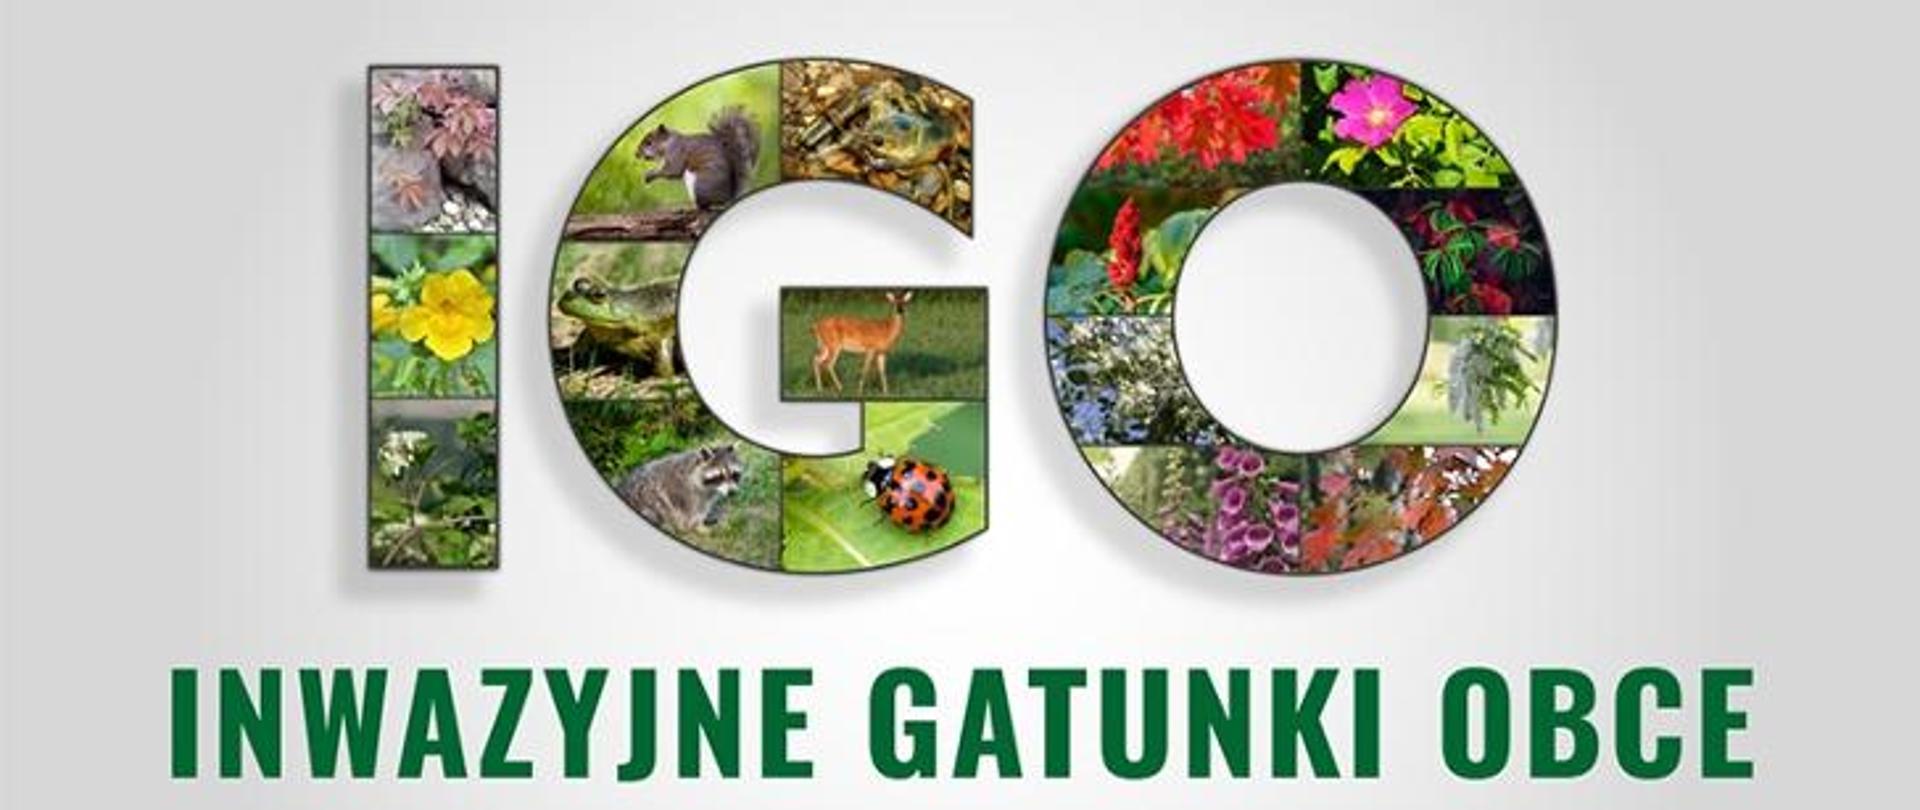 plakat, litery IGO, wewnątrz liter widoczne rośliny i zwierzęta, poniżej napis Inwazyjne Gatunki Obce 